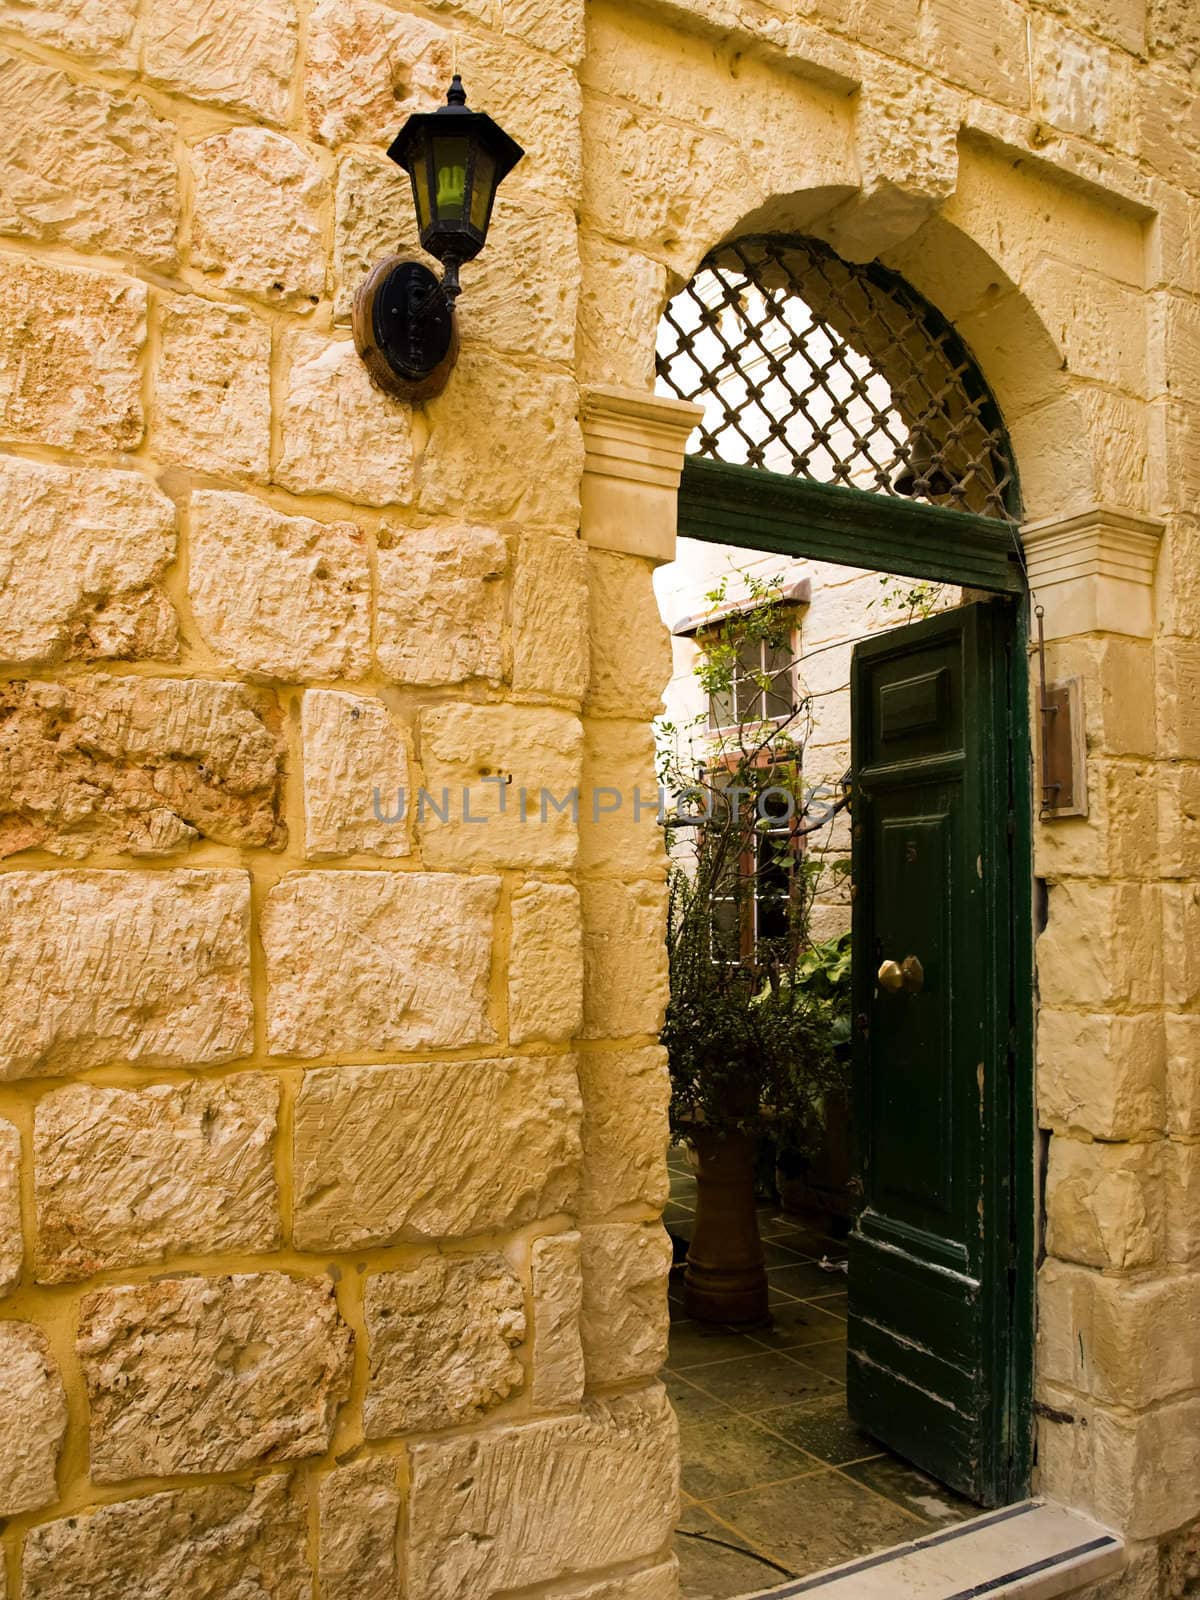 Mediterranean Baroque Door by PhotoWorks